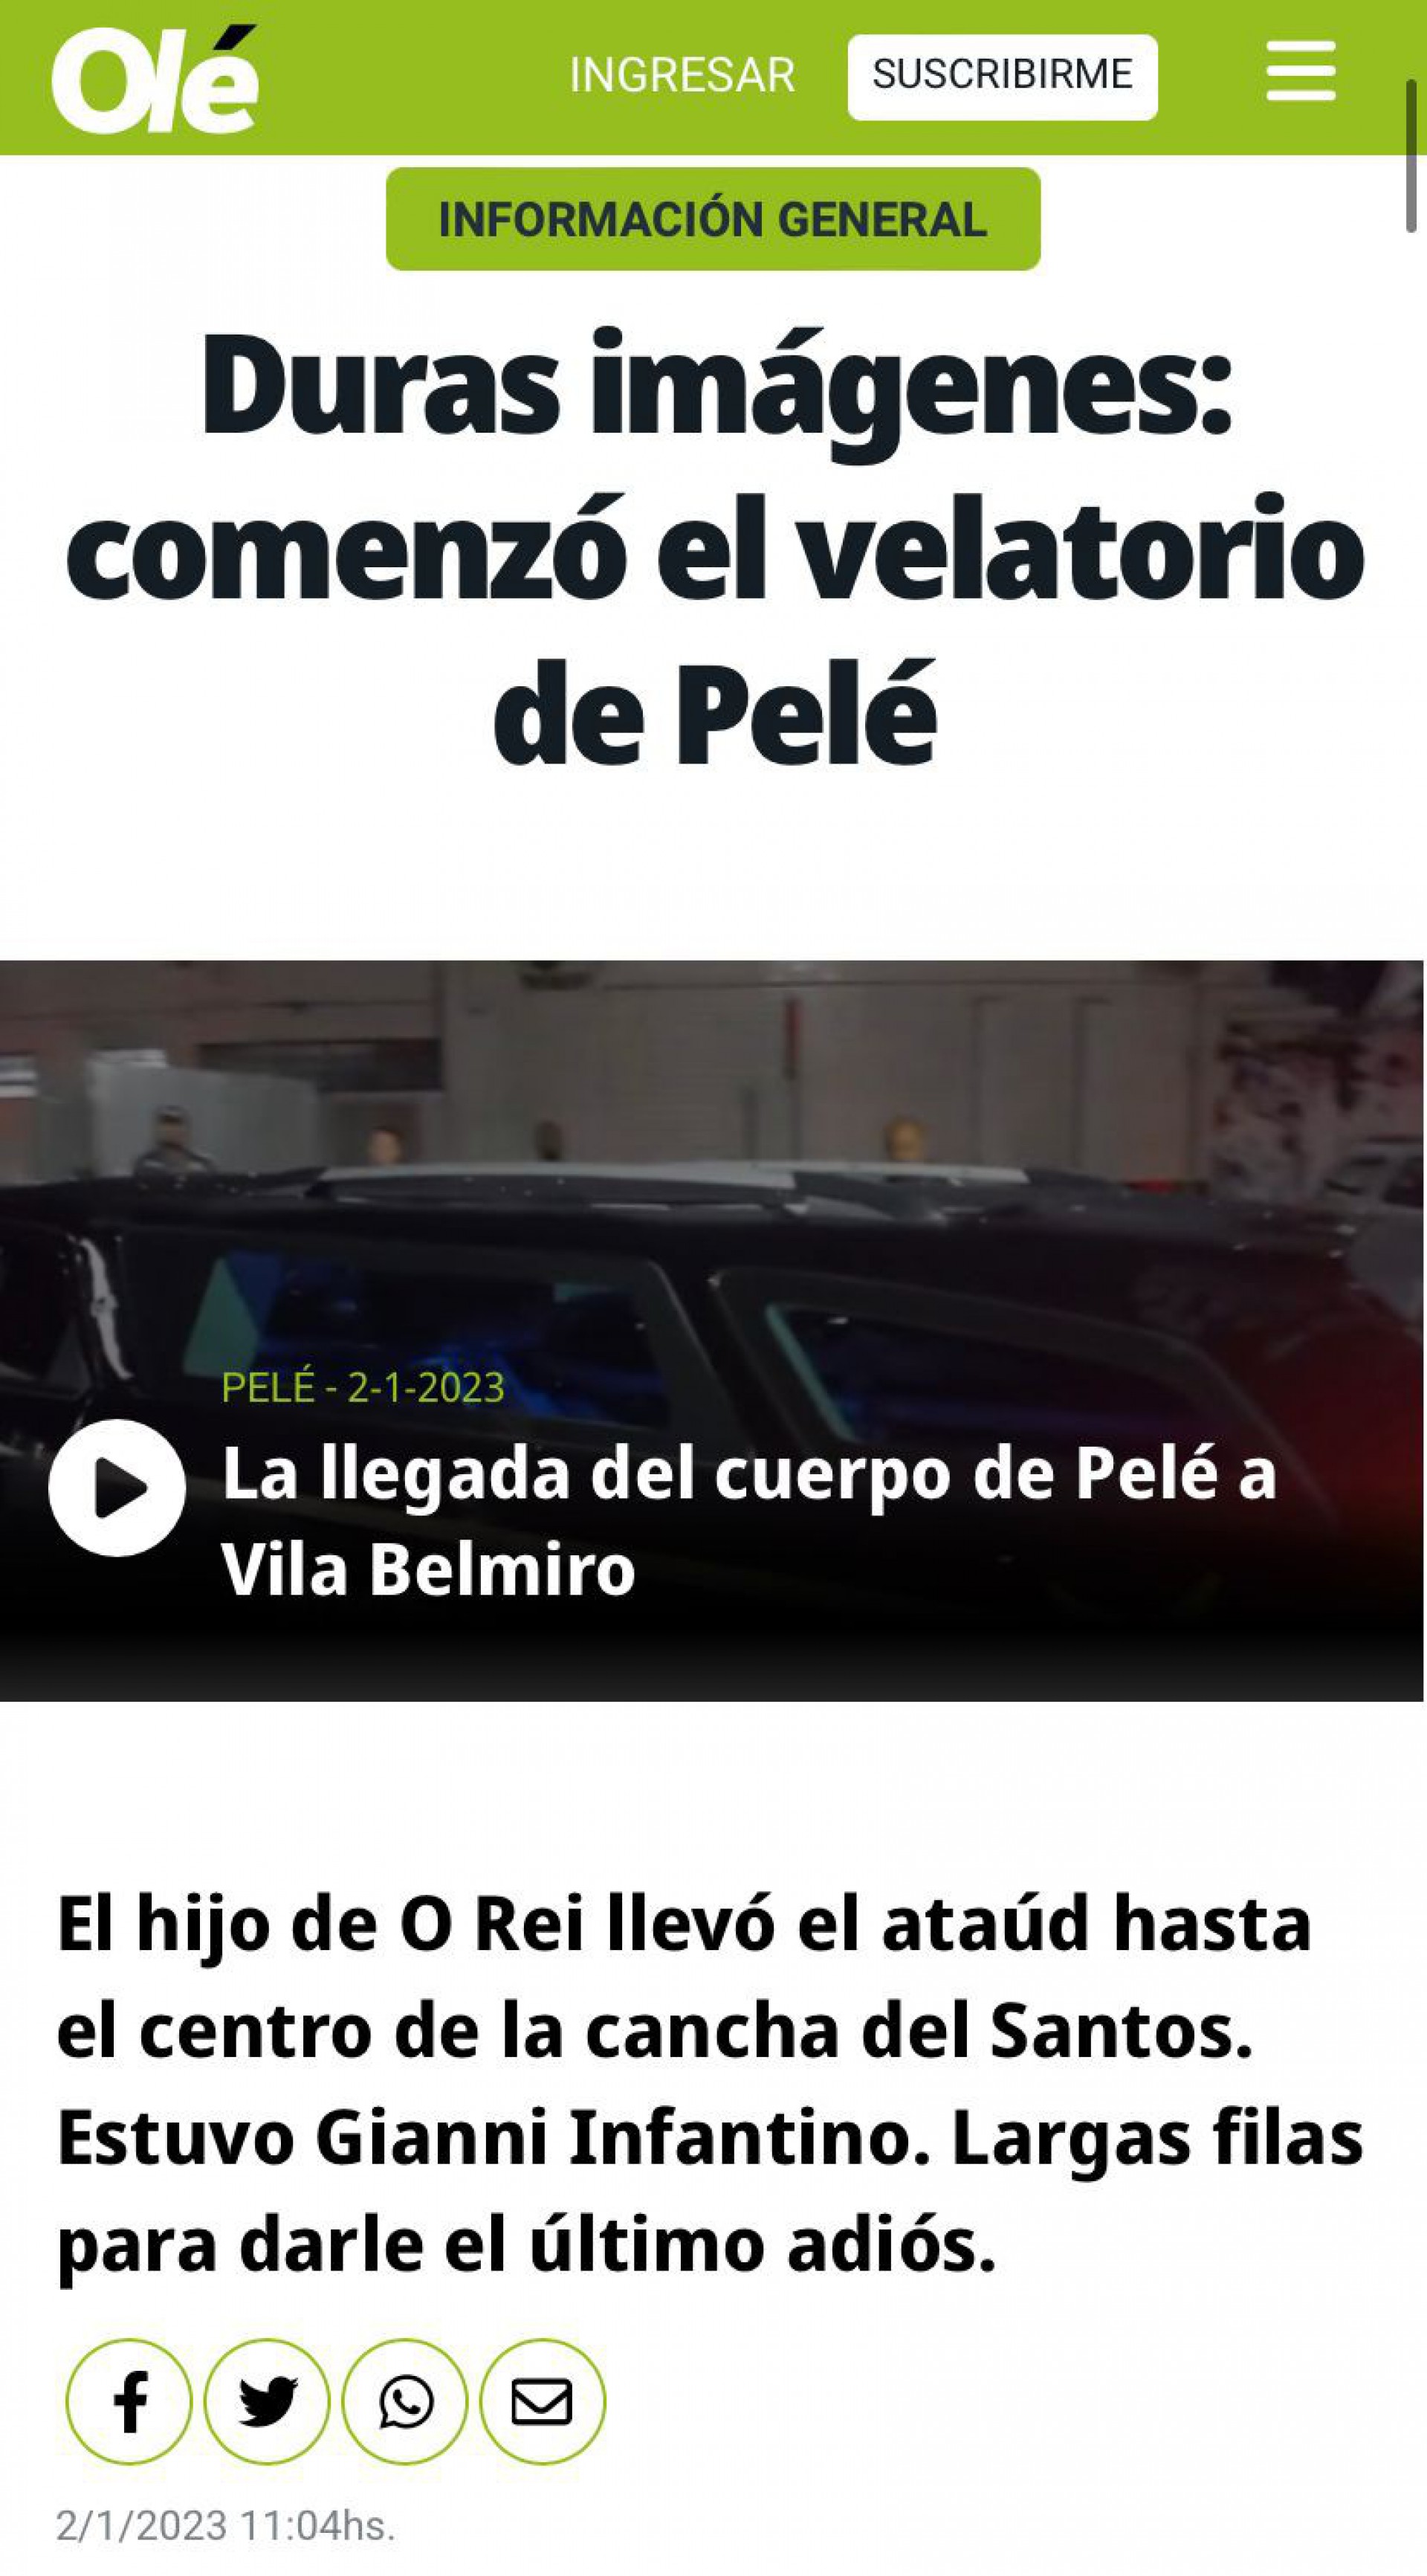 Repercussão do velório de Pelé no Diário Olé, da Argentina  - Foto: Reprodução